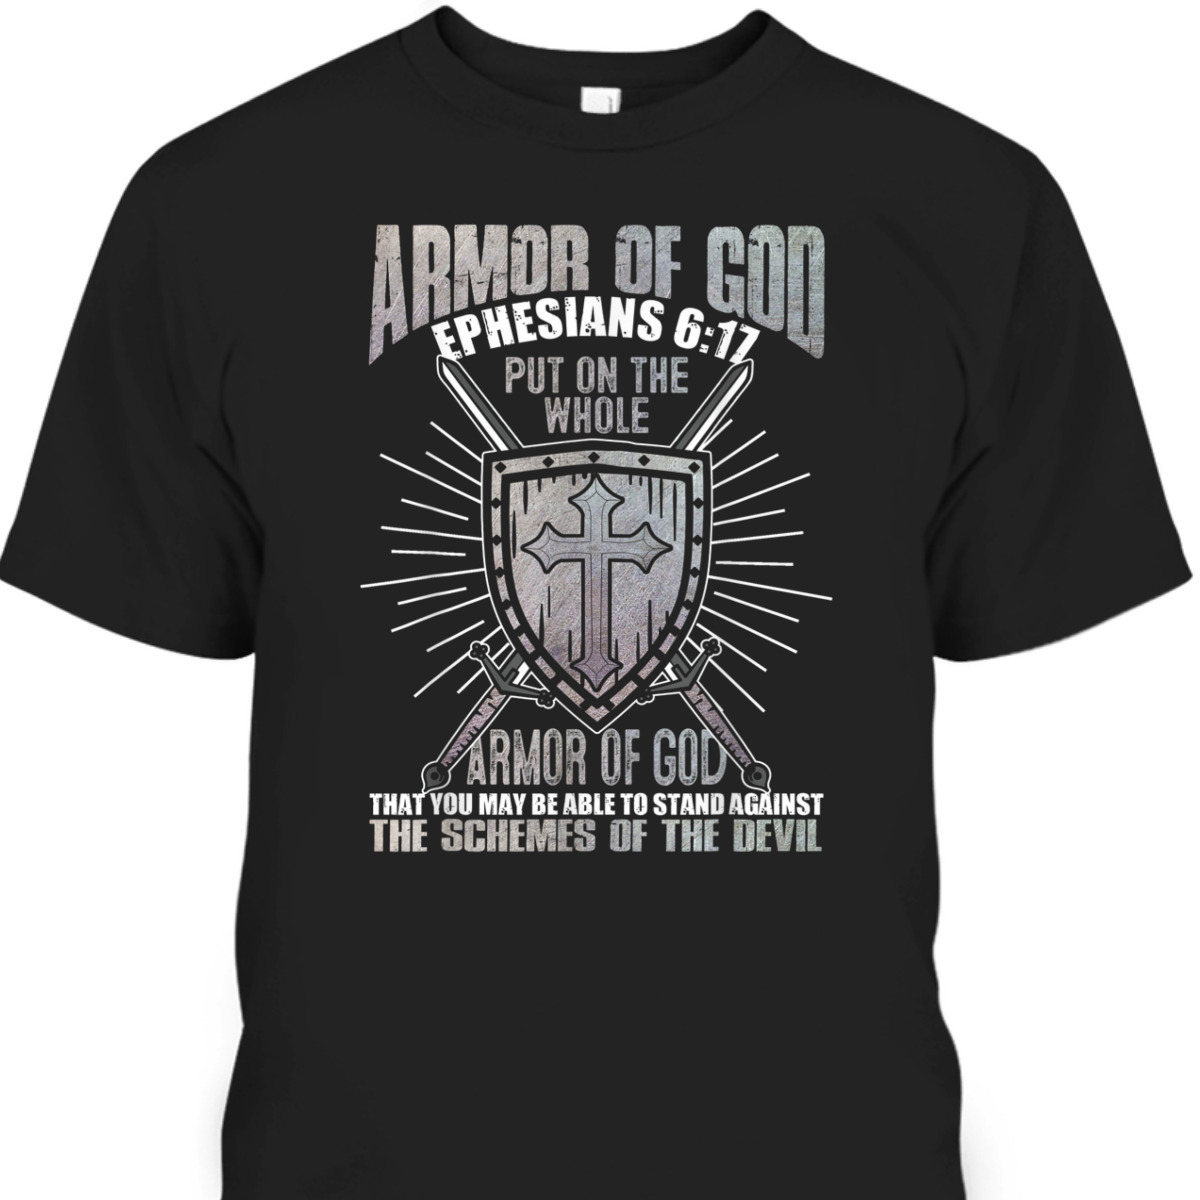 The Full Armor Of God T-Shirt Ephesians 617 Christian Religious Gift